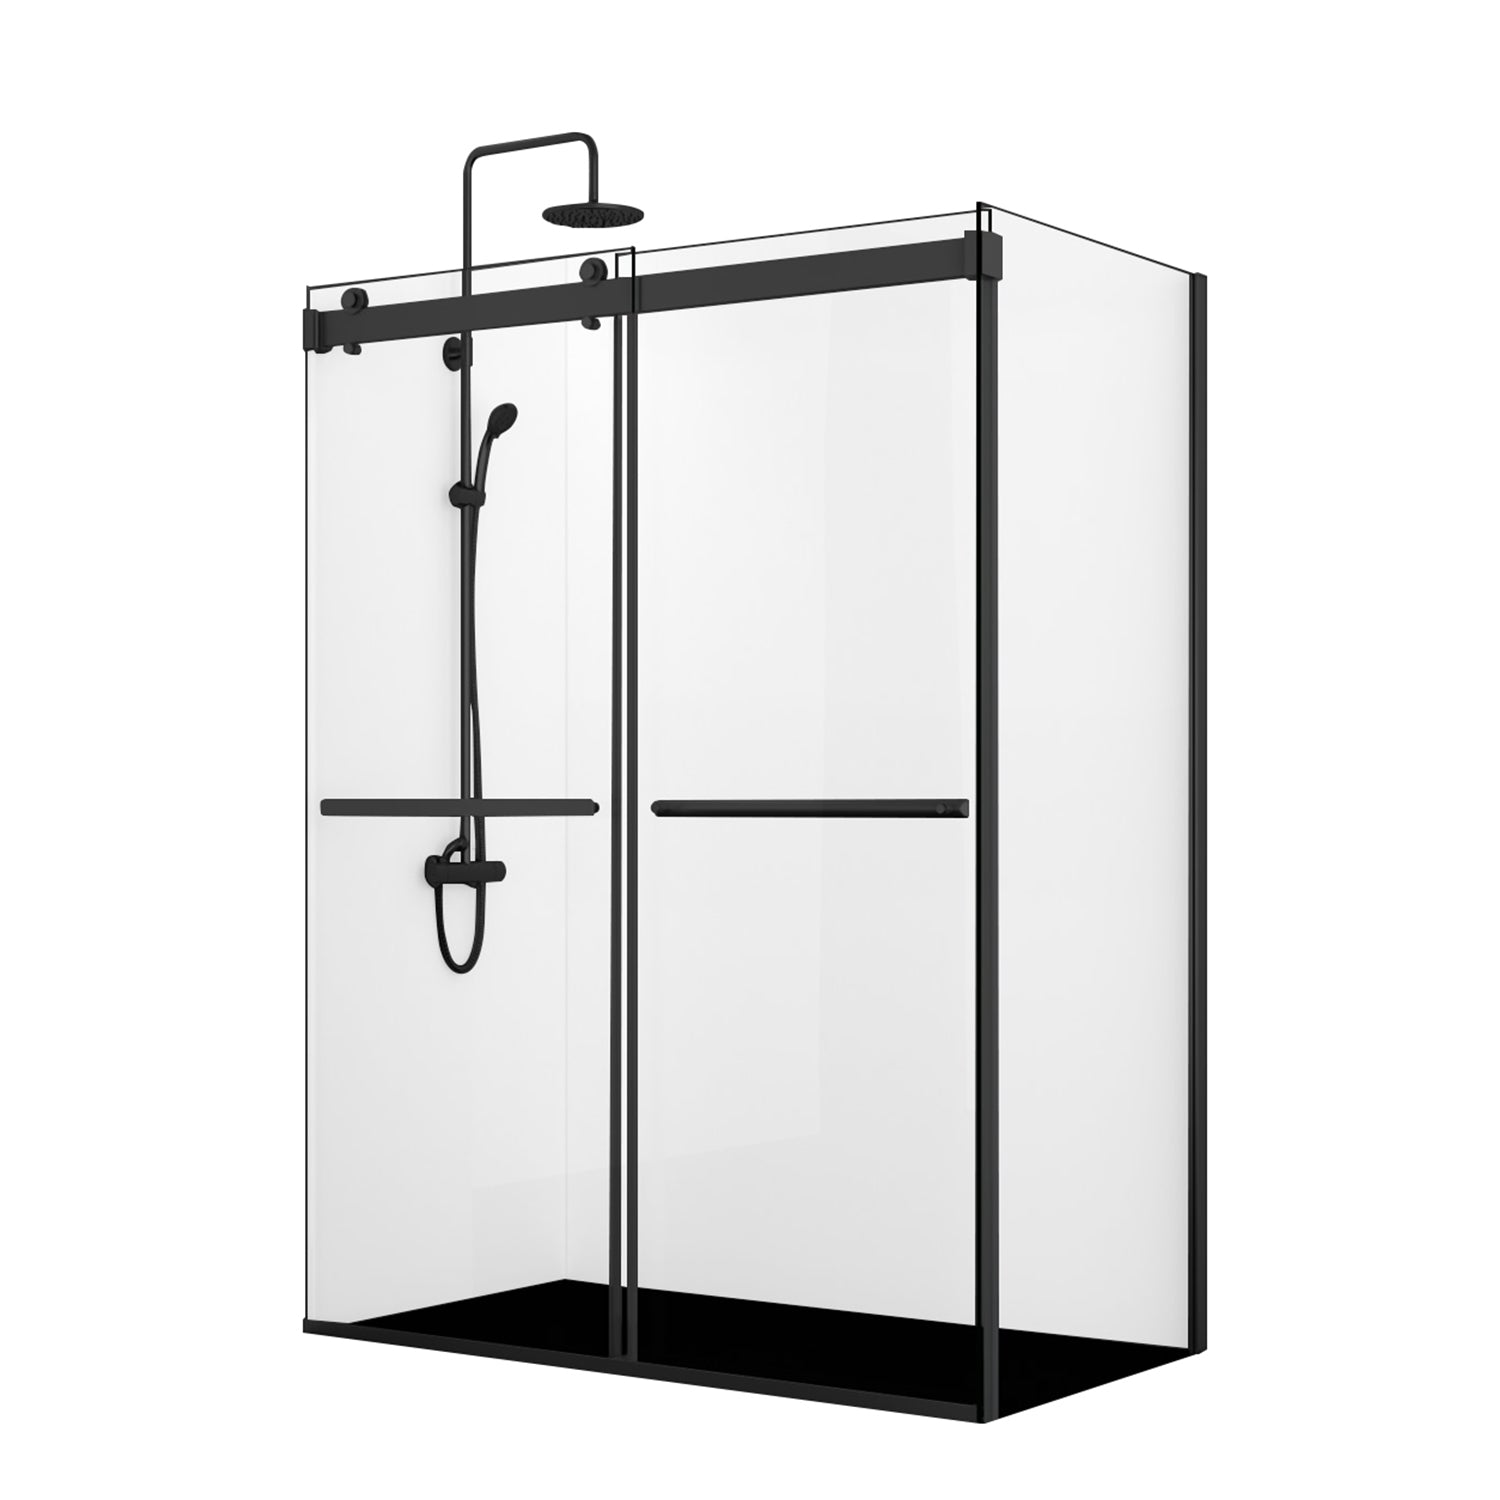 Spezia Double Sliding Frameless Shower Door – Vinnova Design